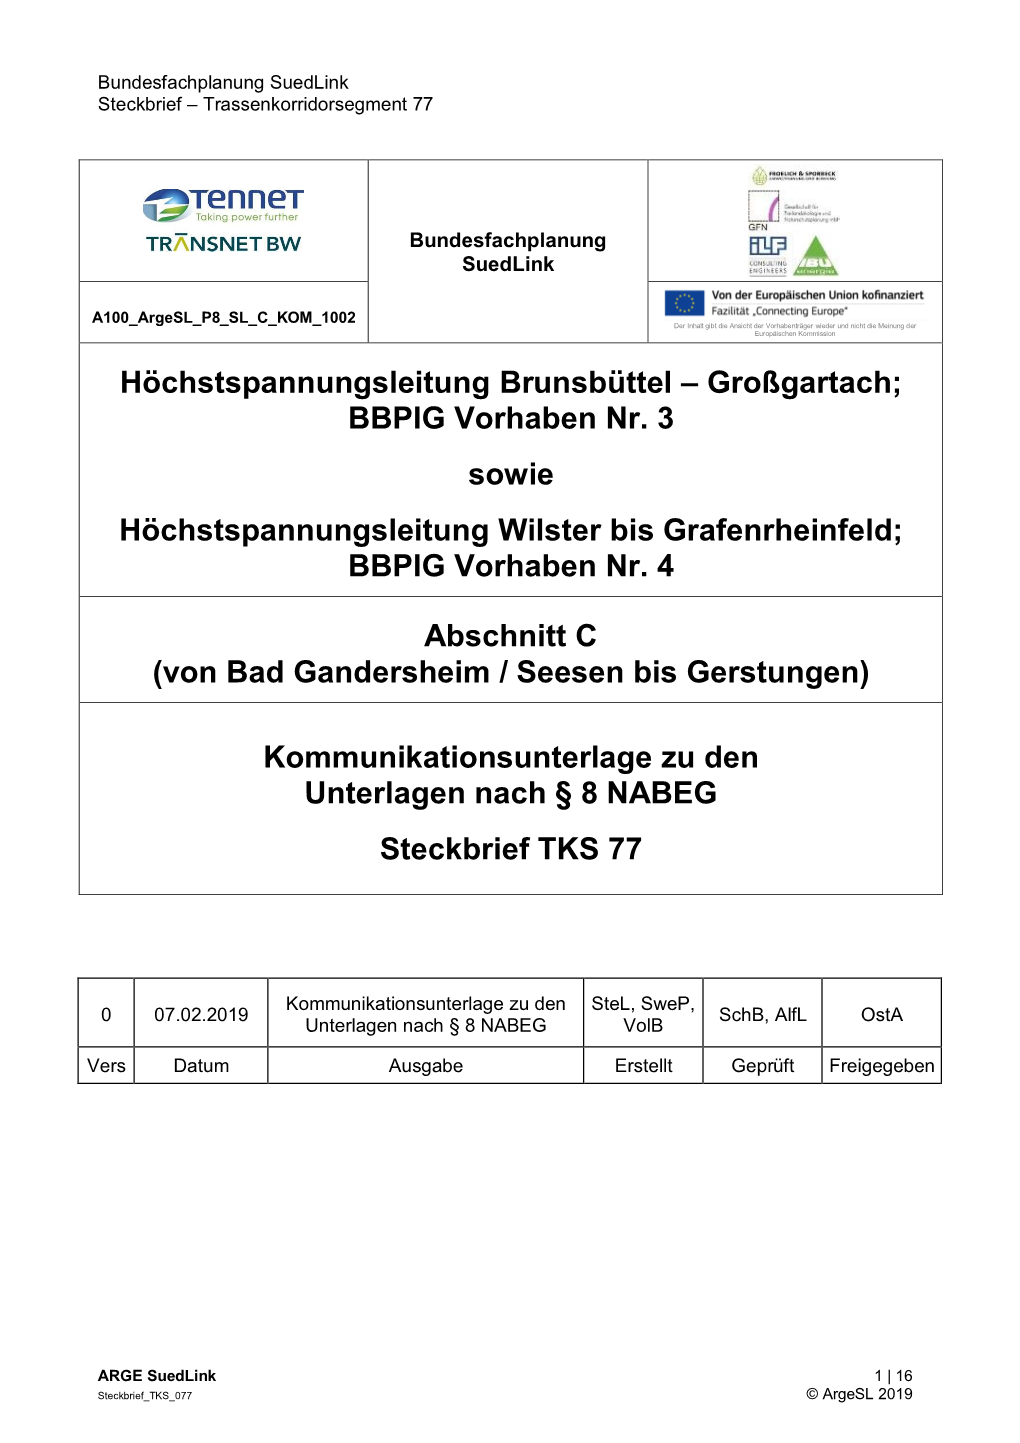 Höchstspannungsleitung Brunsbüttel – Großgartach; BBPIG Vorhaben Nr